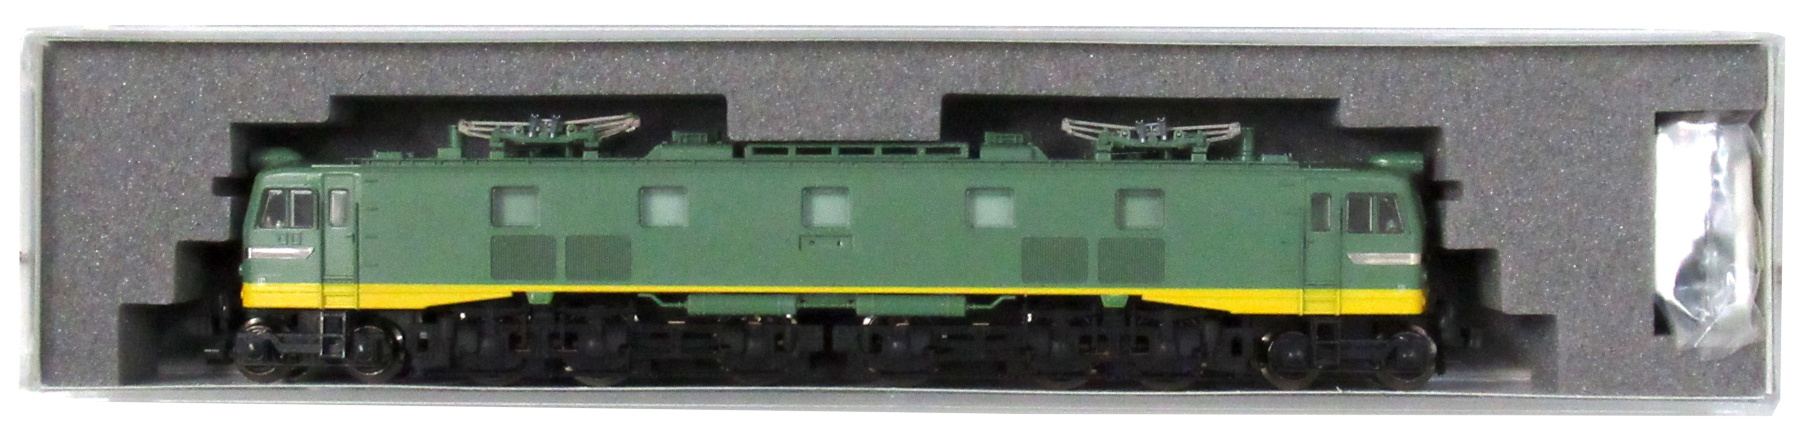 公式]鉄道模型(JR・国鉄 形式別(N)、電気機関車、EF58)カテゴリ 